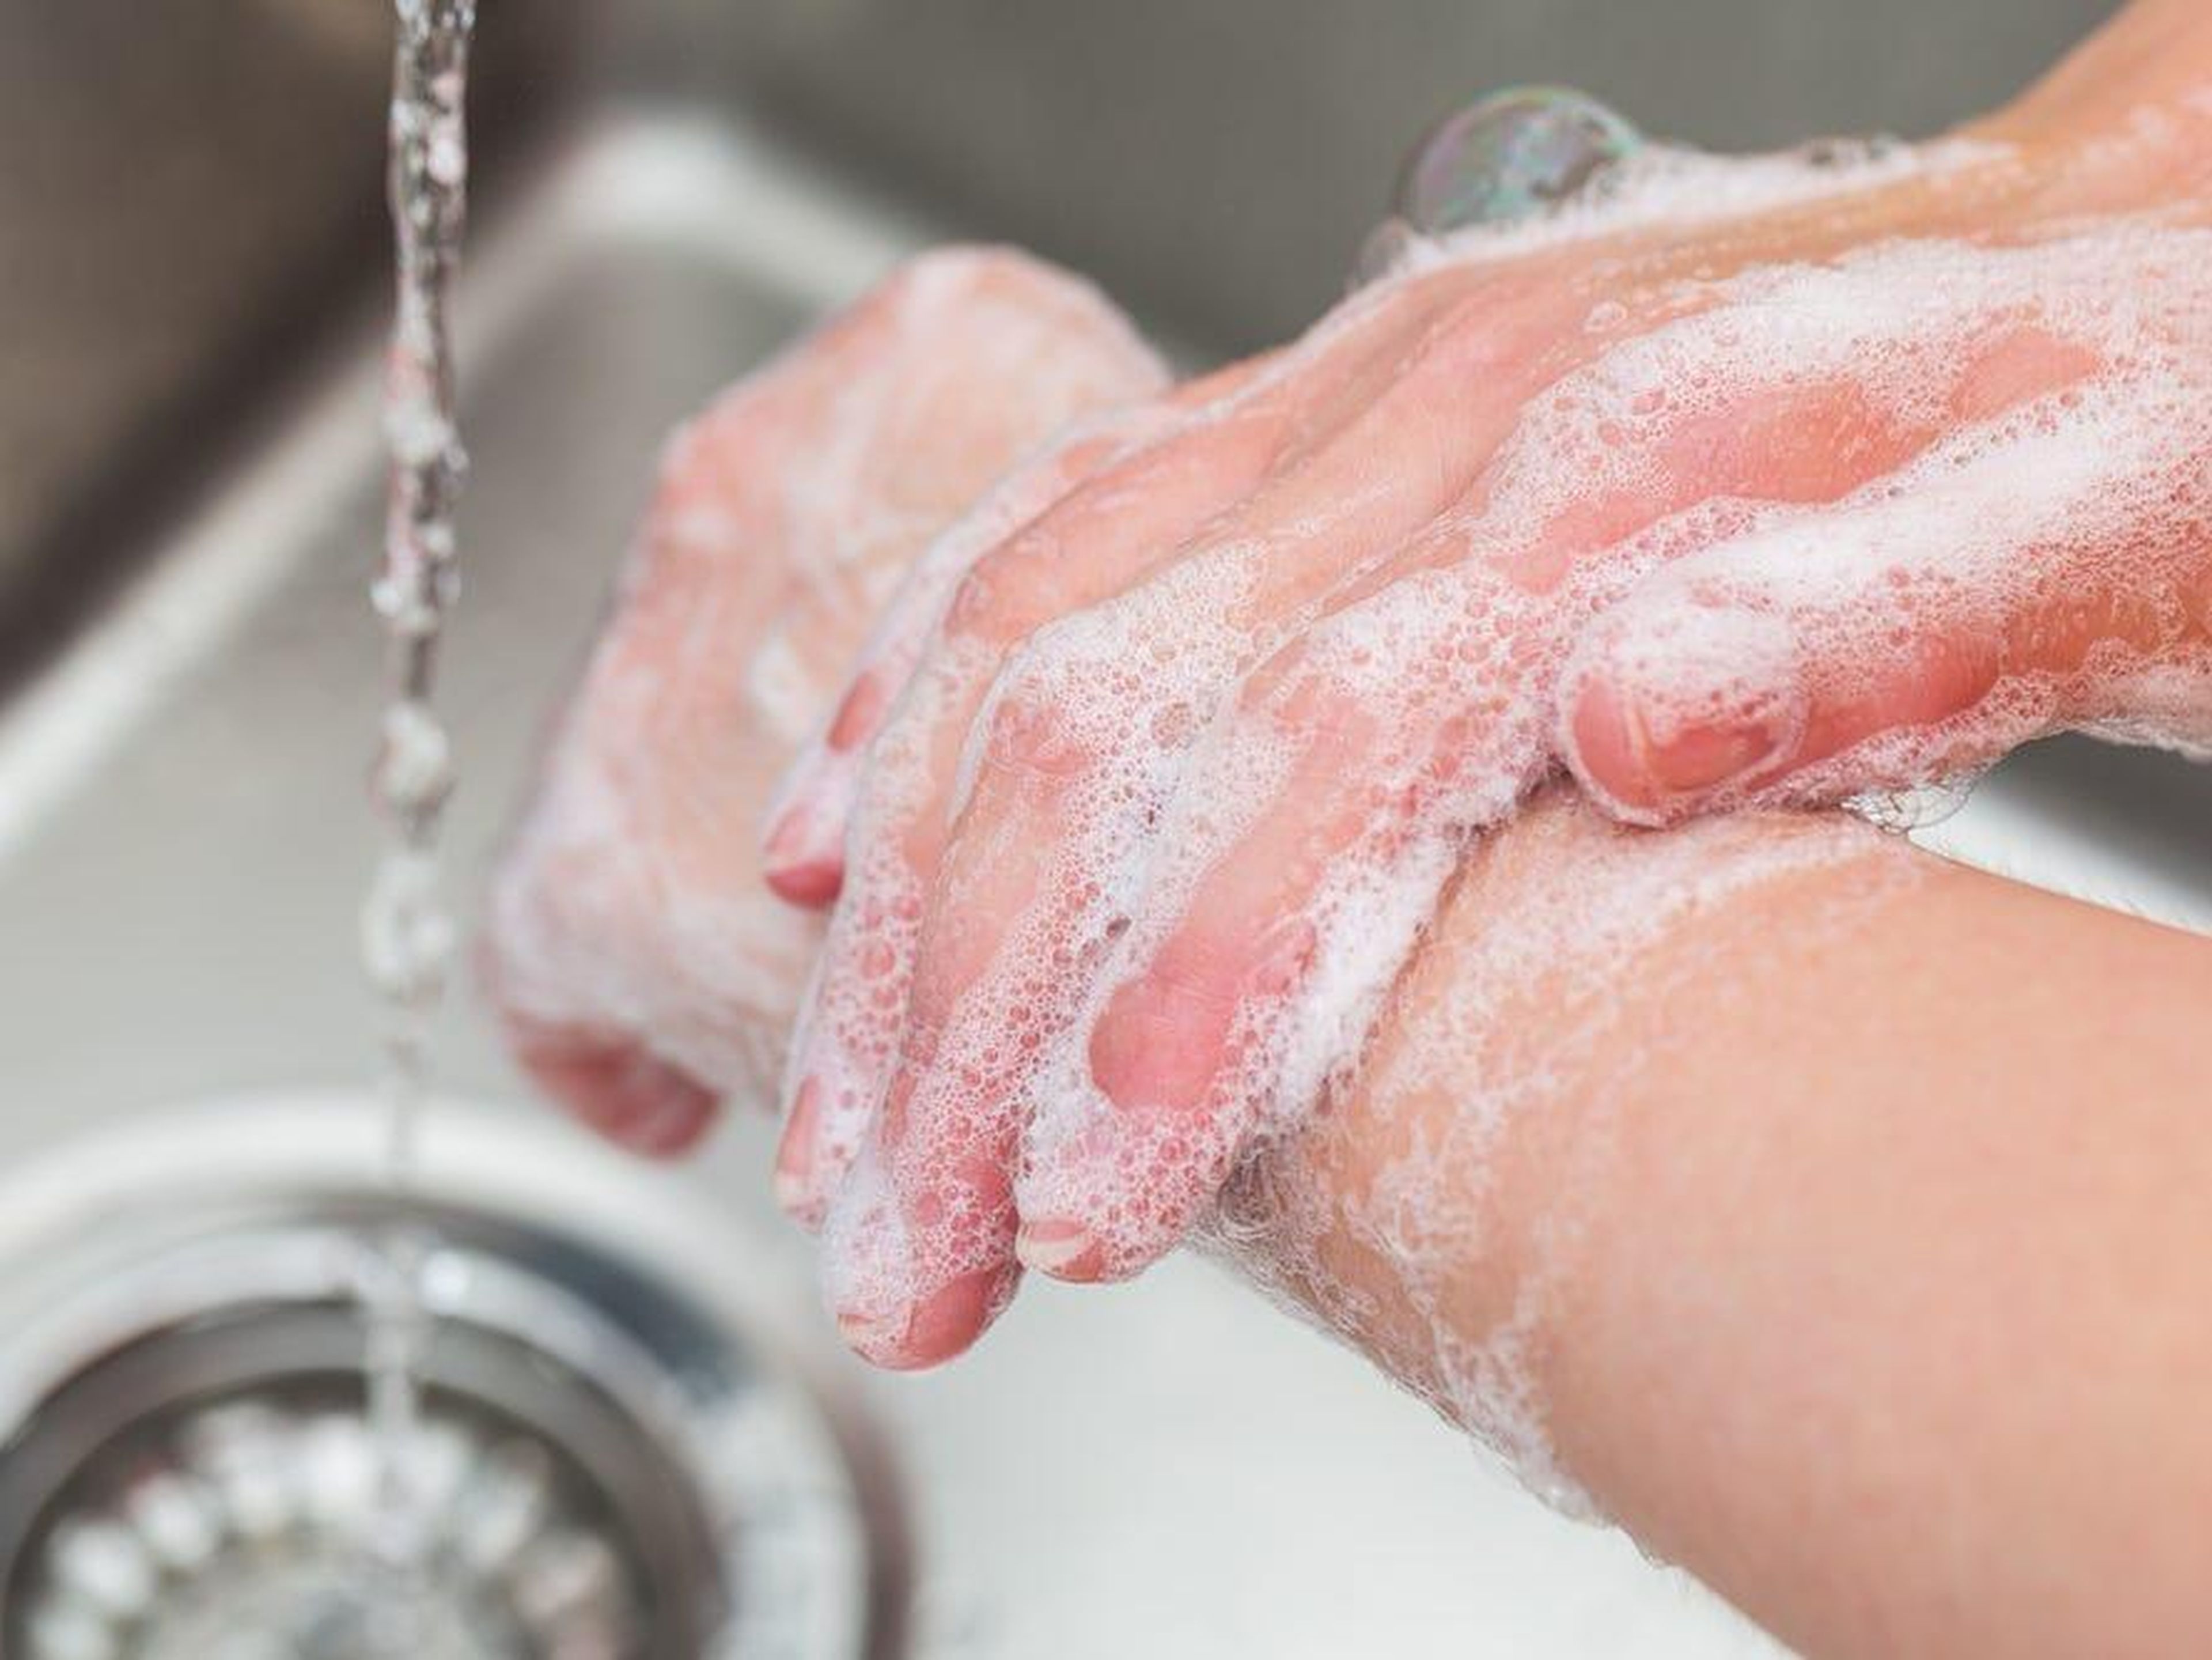 Simplemente lava tus manos con jabón y agua tibia.